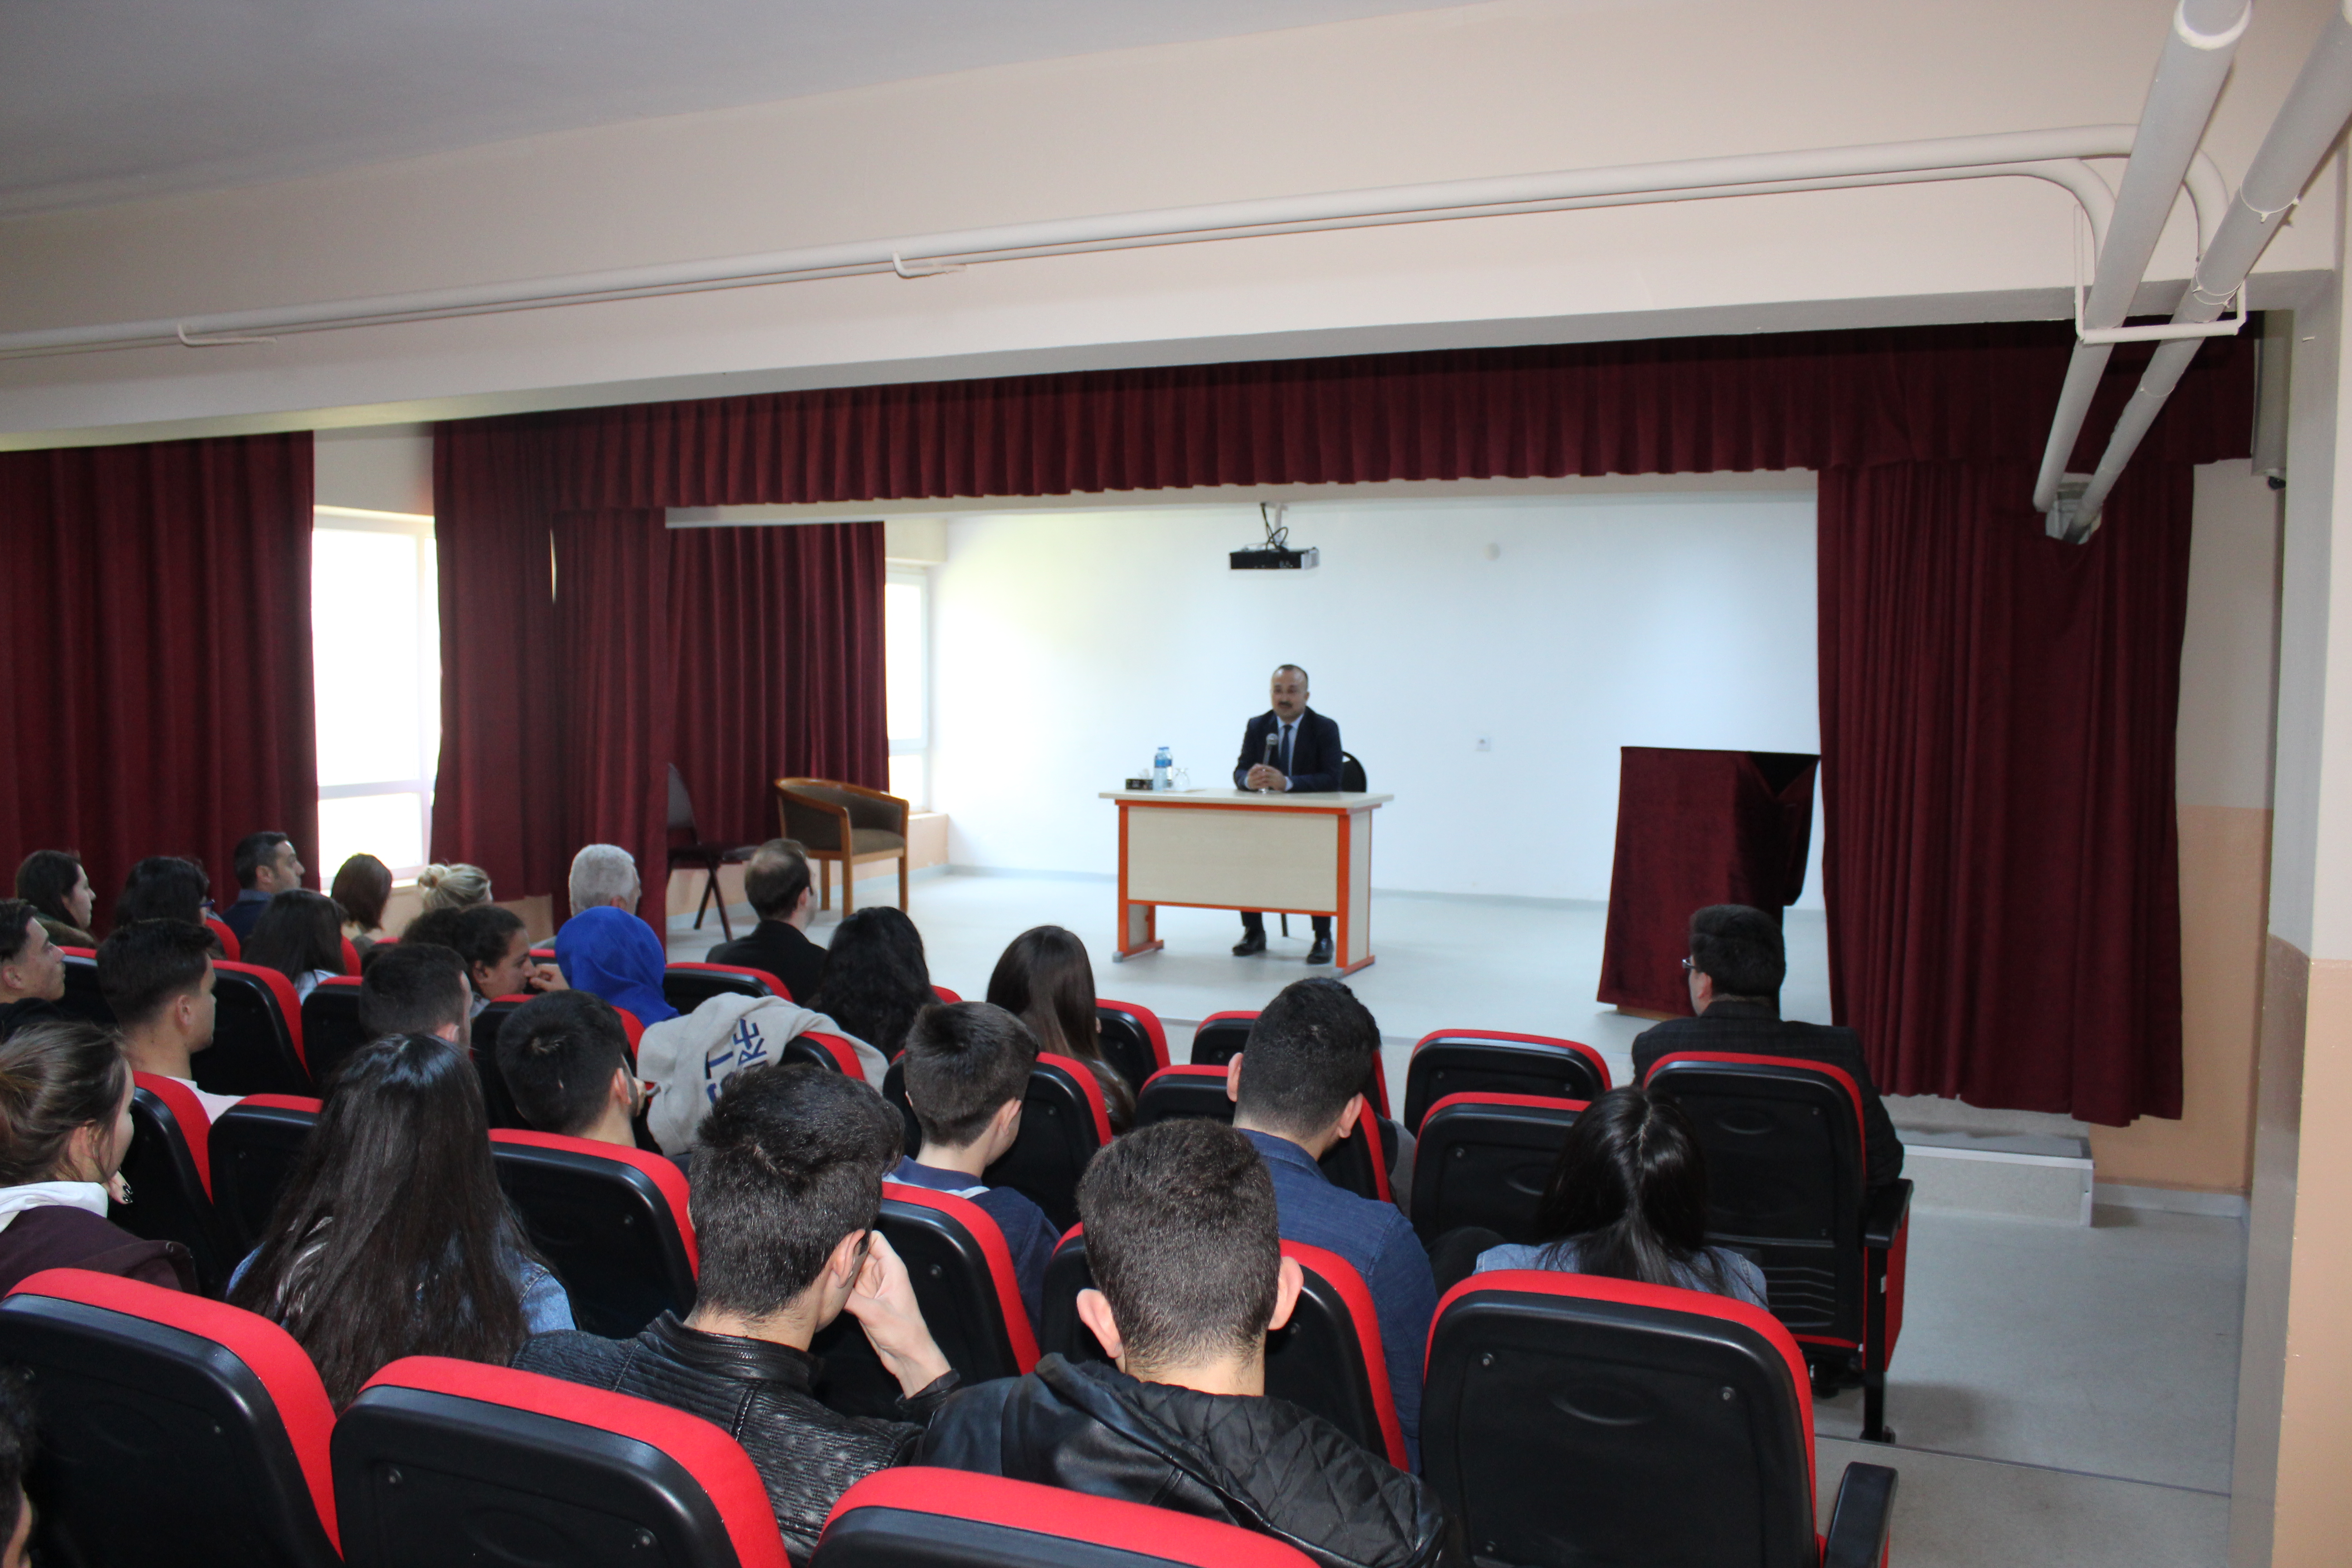  Kumburgaz Mehmet Erçağ Mesleki ve Teknik Anadolu Lisesini ziyaret eden İlçe Kaymakamı Dr. Mehmet ÖZEL , okulda incelemelerde bulunarak öğrenciler ile bir araya geldi.